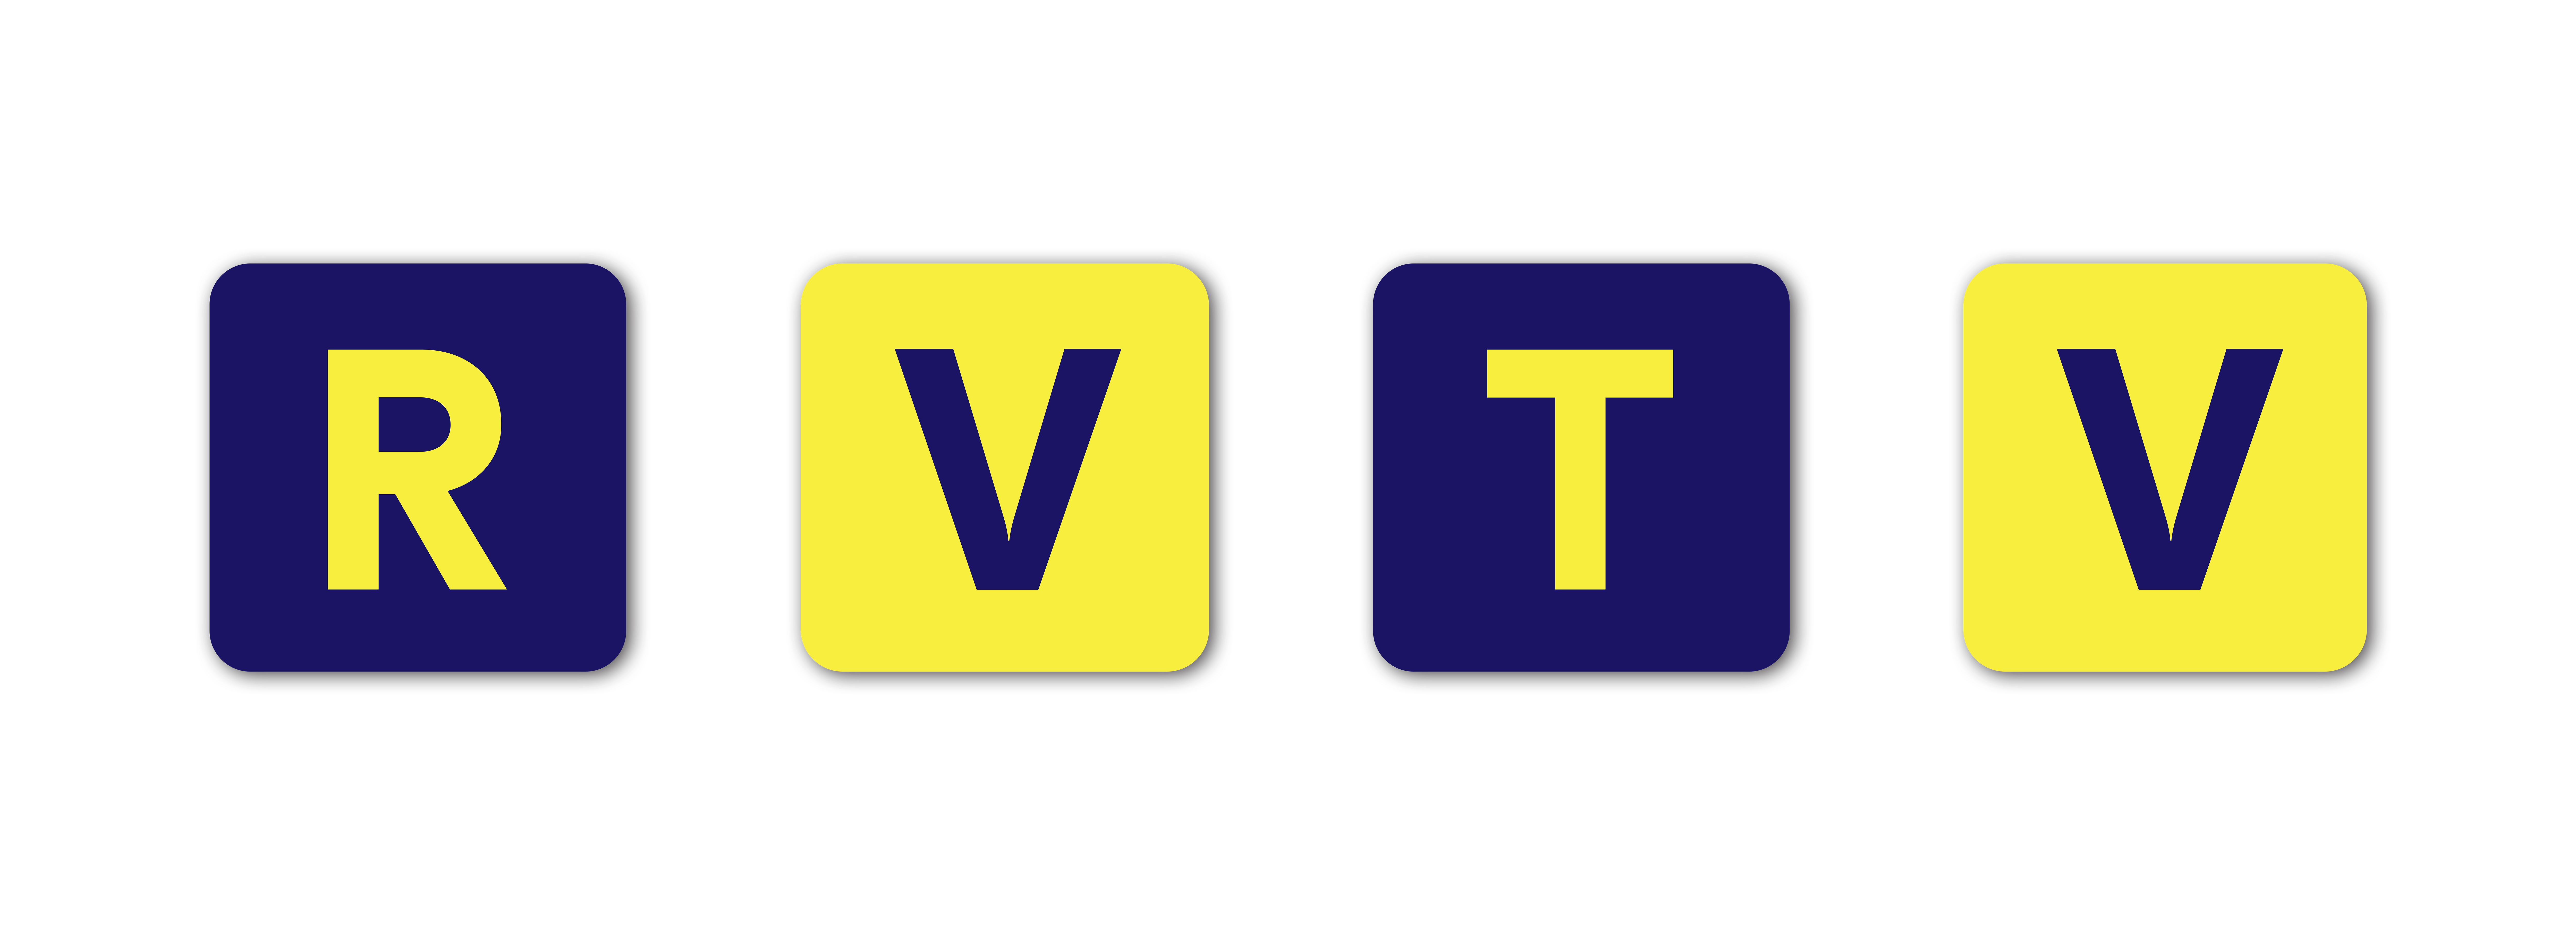 RVTV - Rožňavská televízia